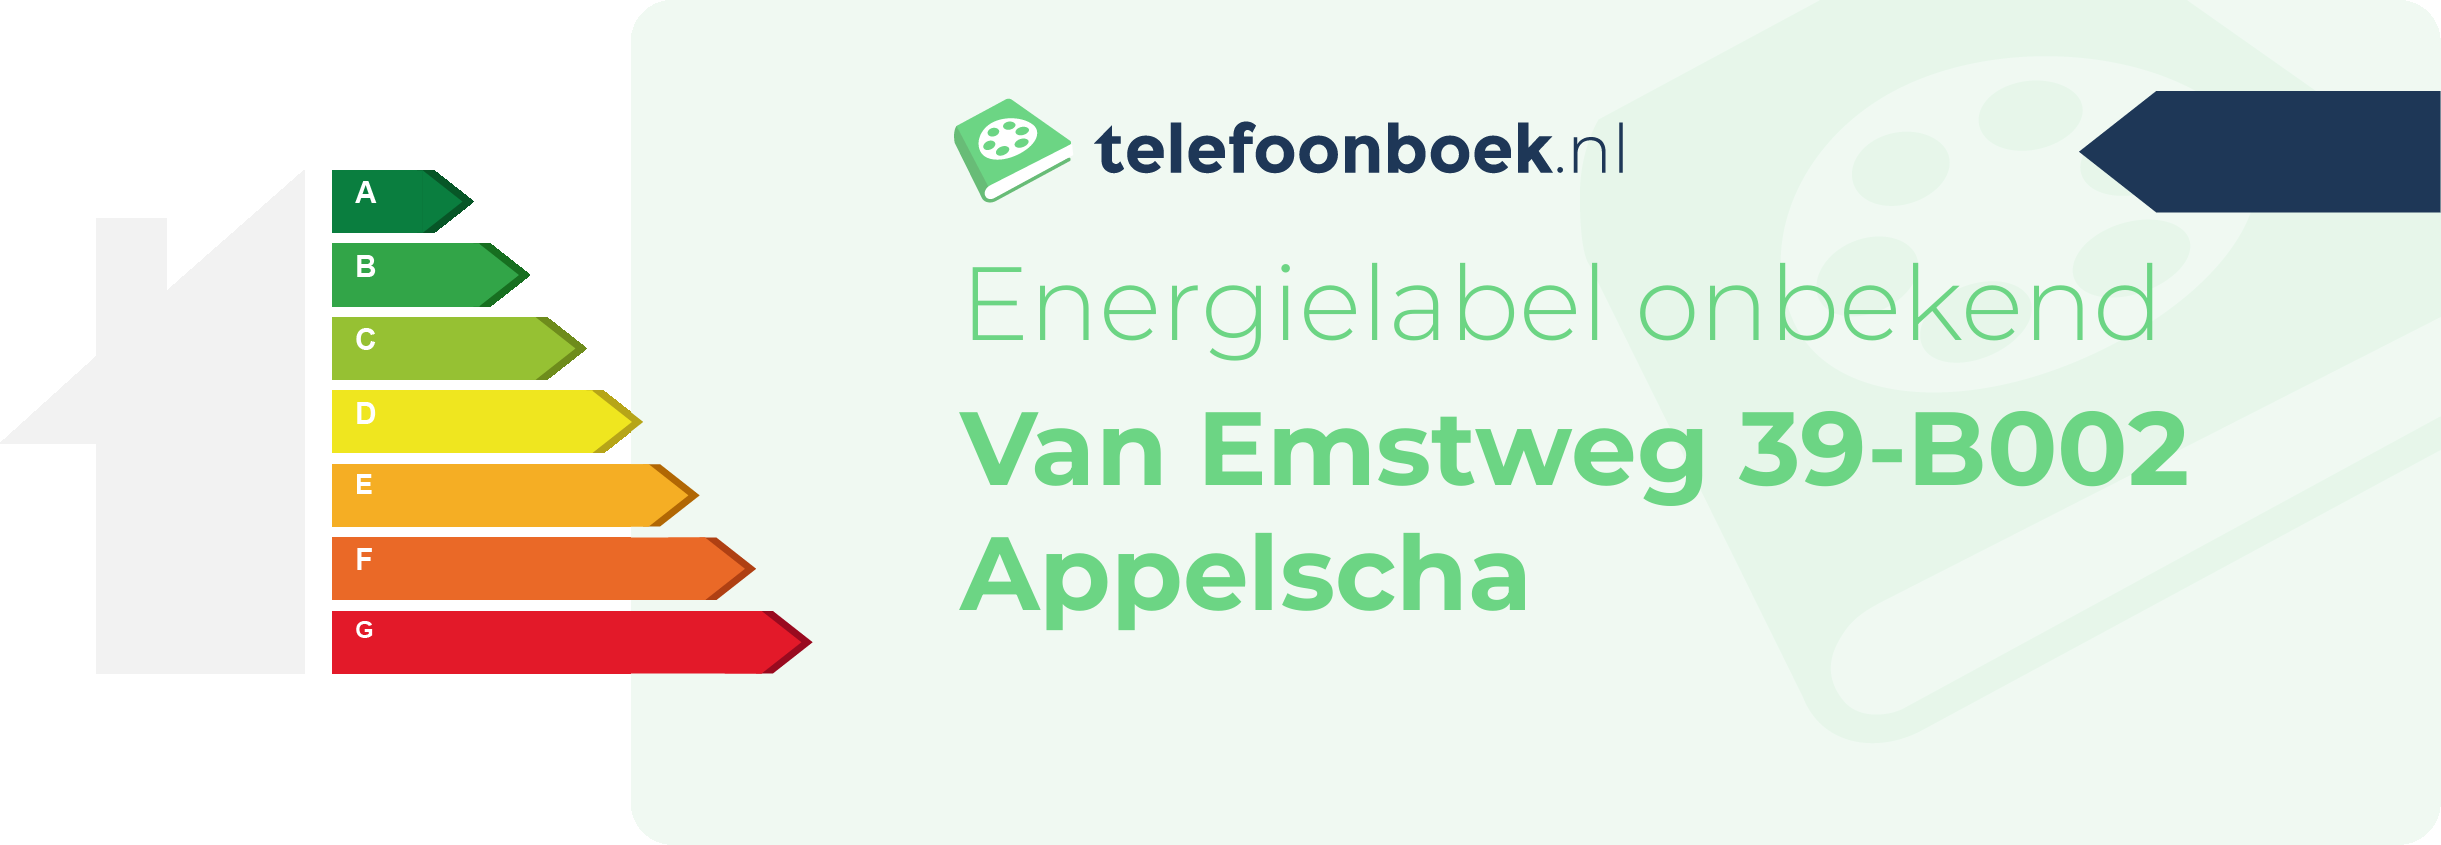 Energielabel Van Emstweg 39-B002 Appelscha